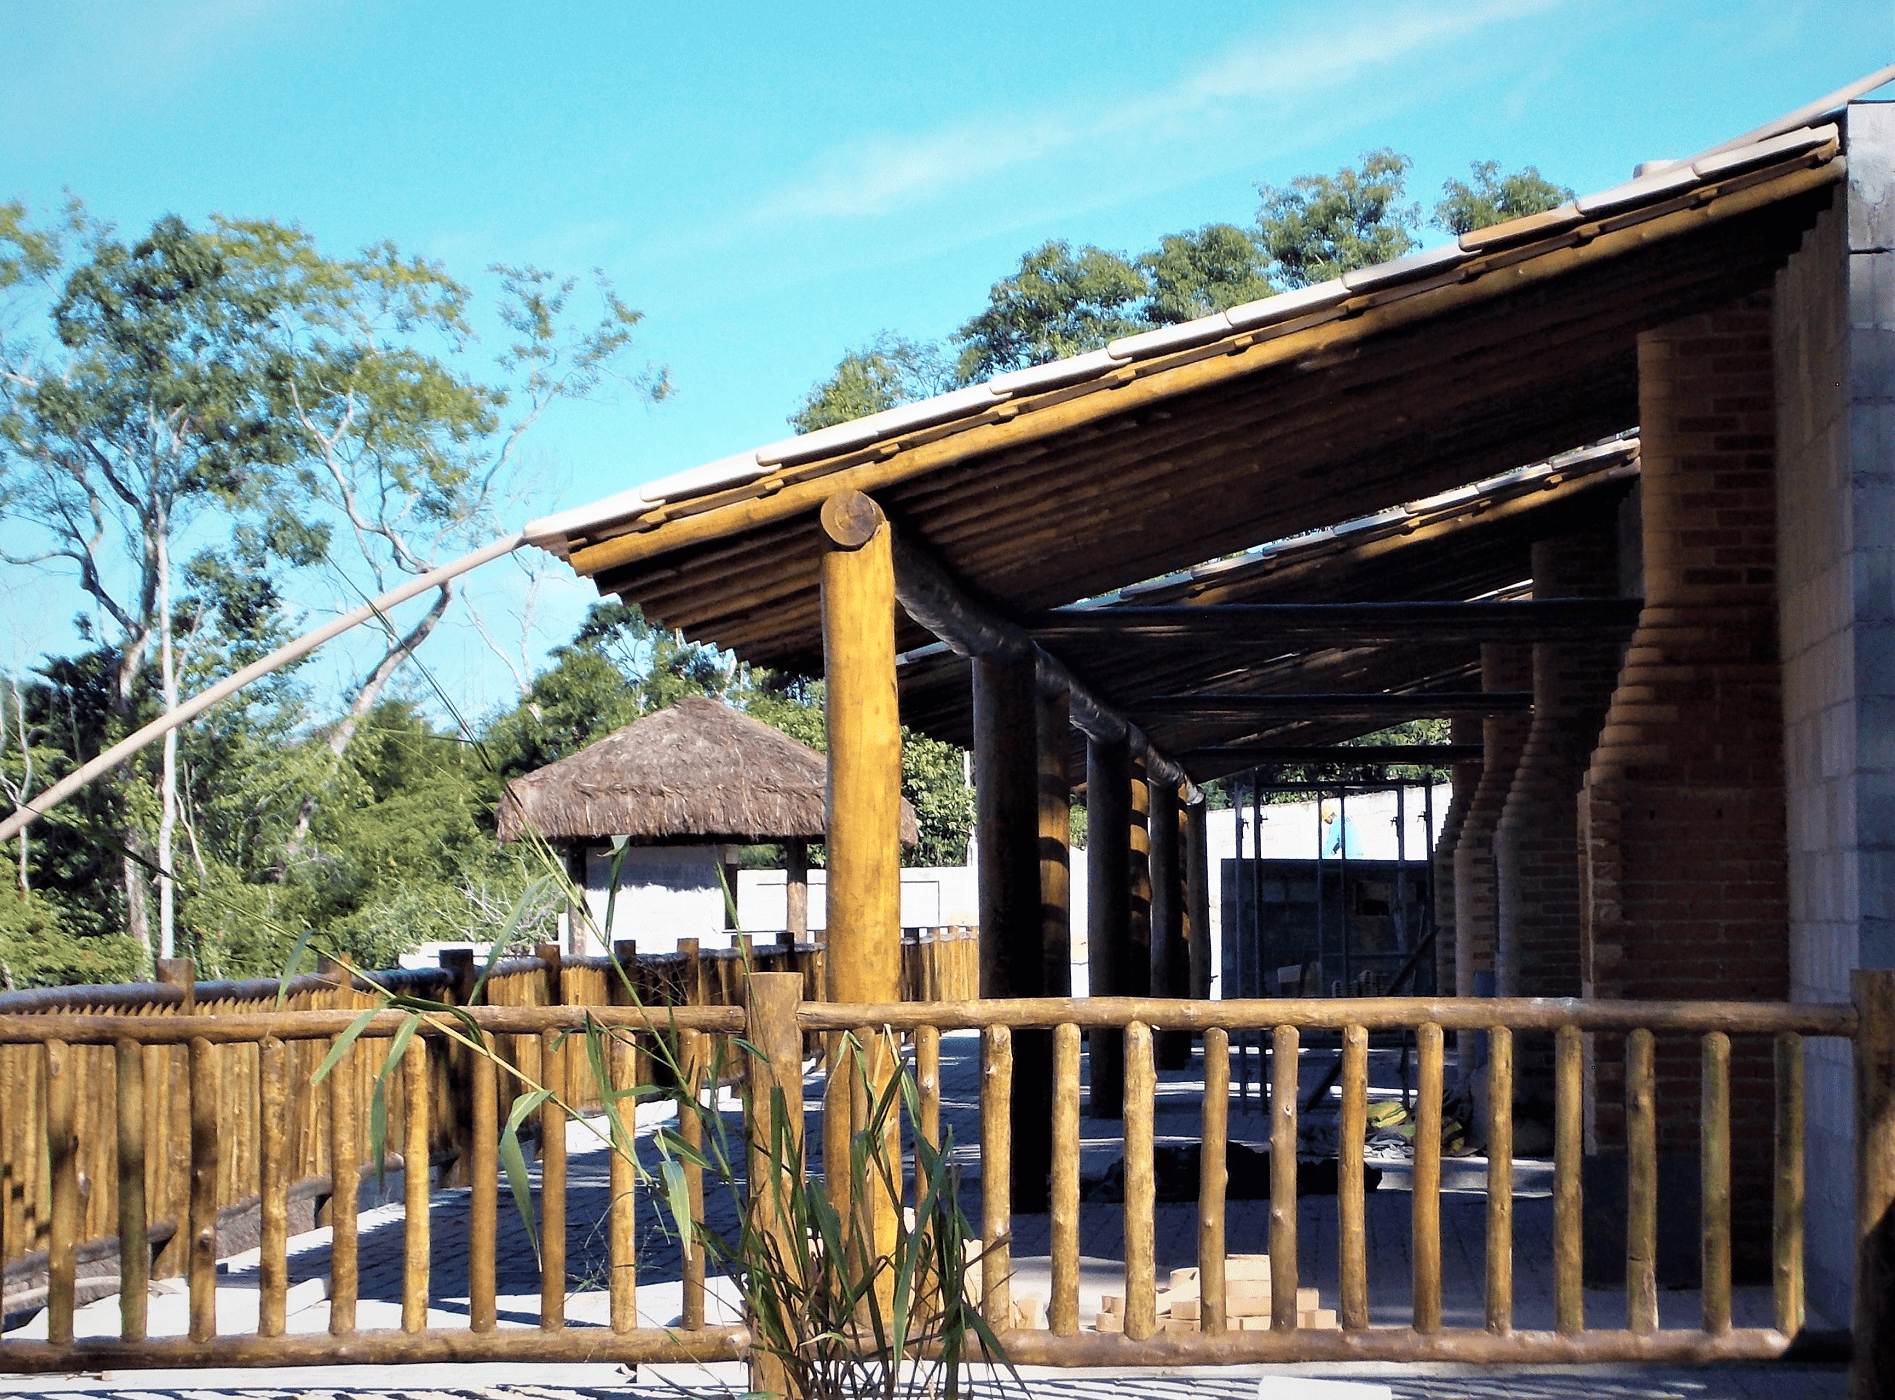 As áreas de churrasqueiras receberam estrutura de madeira com cobertura de telha cerâmica. O guarda corpo de eucalipto demarca cada espaço com charme, beleza e simplicidade.